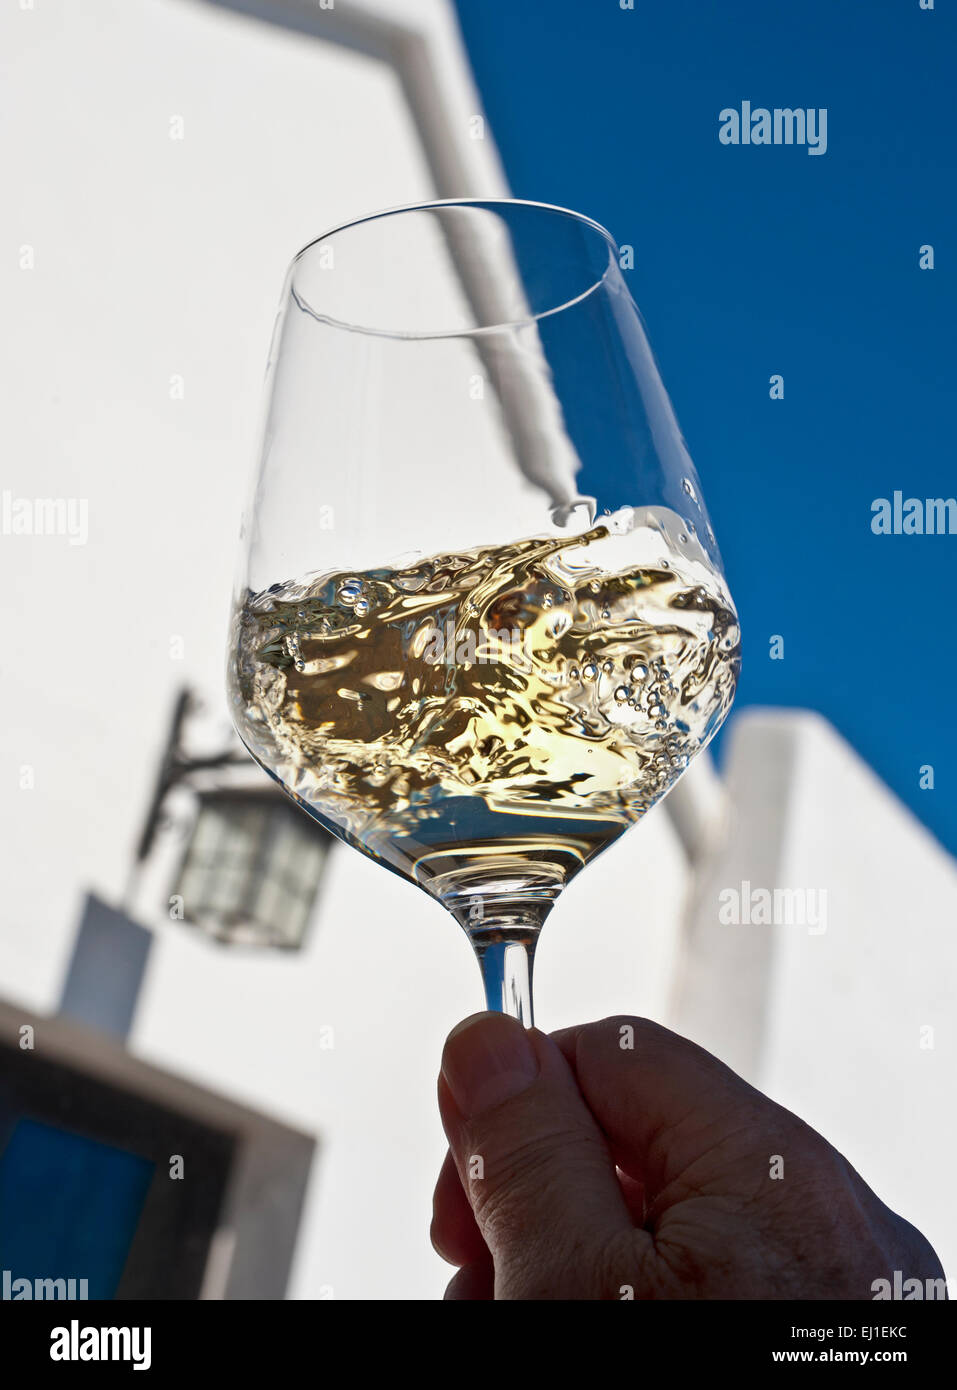 DEGUSTAZIONE DI VINI BIANCHI AL fresco SOLEGGIATO e rapido aerare e valutare un bicchiere di vino bianco all'aperto al fresco, al sole, situazione di degustazione di vini Foto Stock